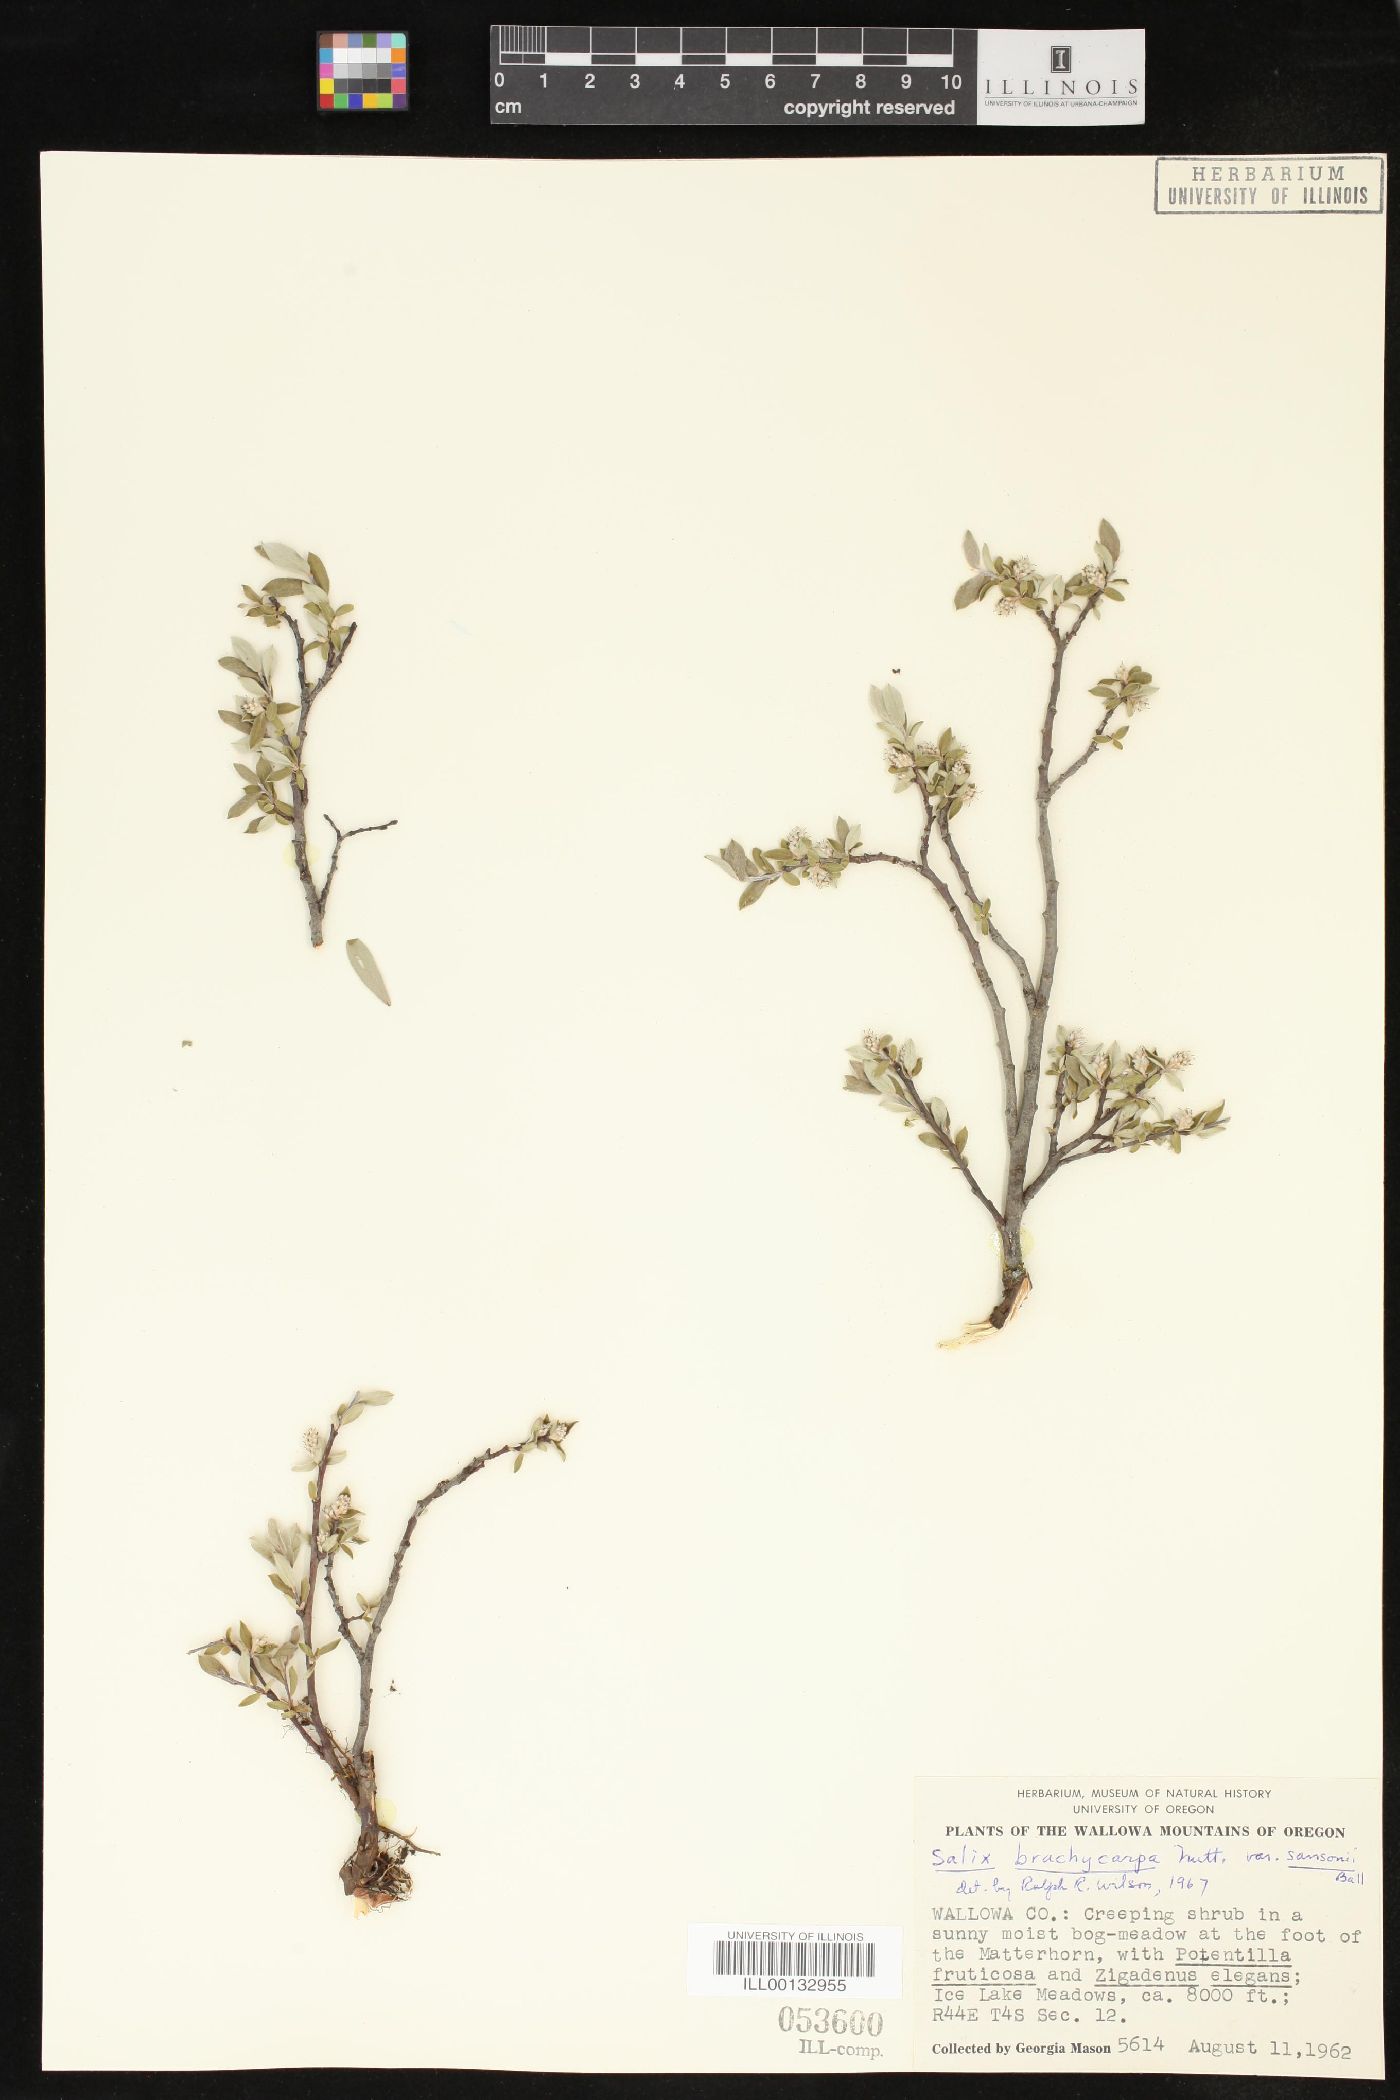 Salix brachycarpa var. sansonii image